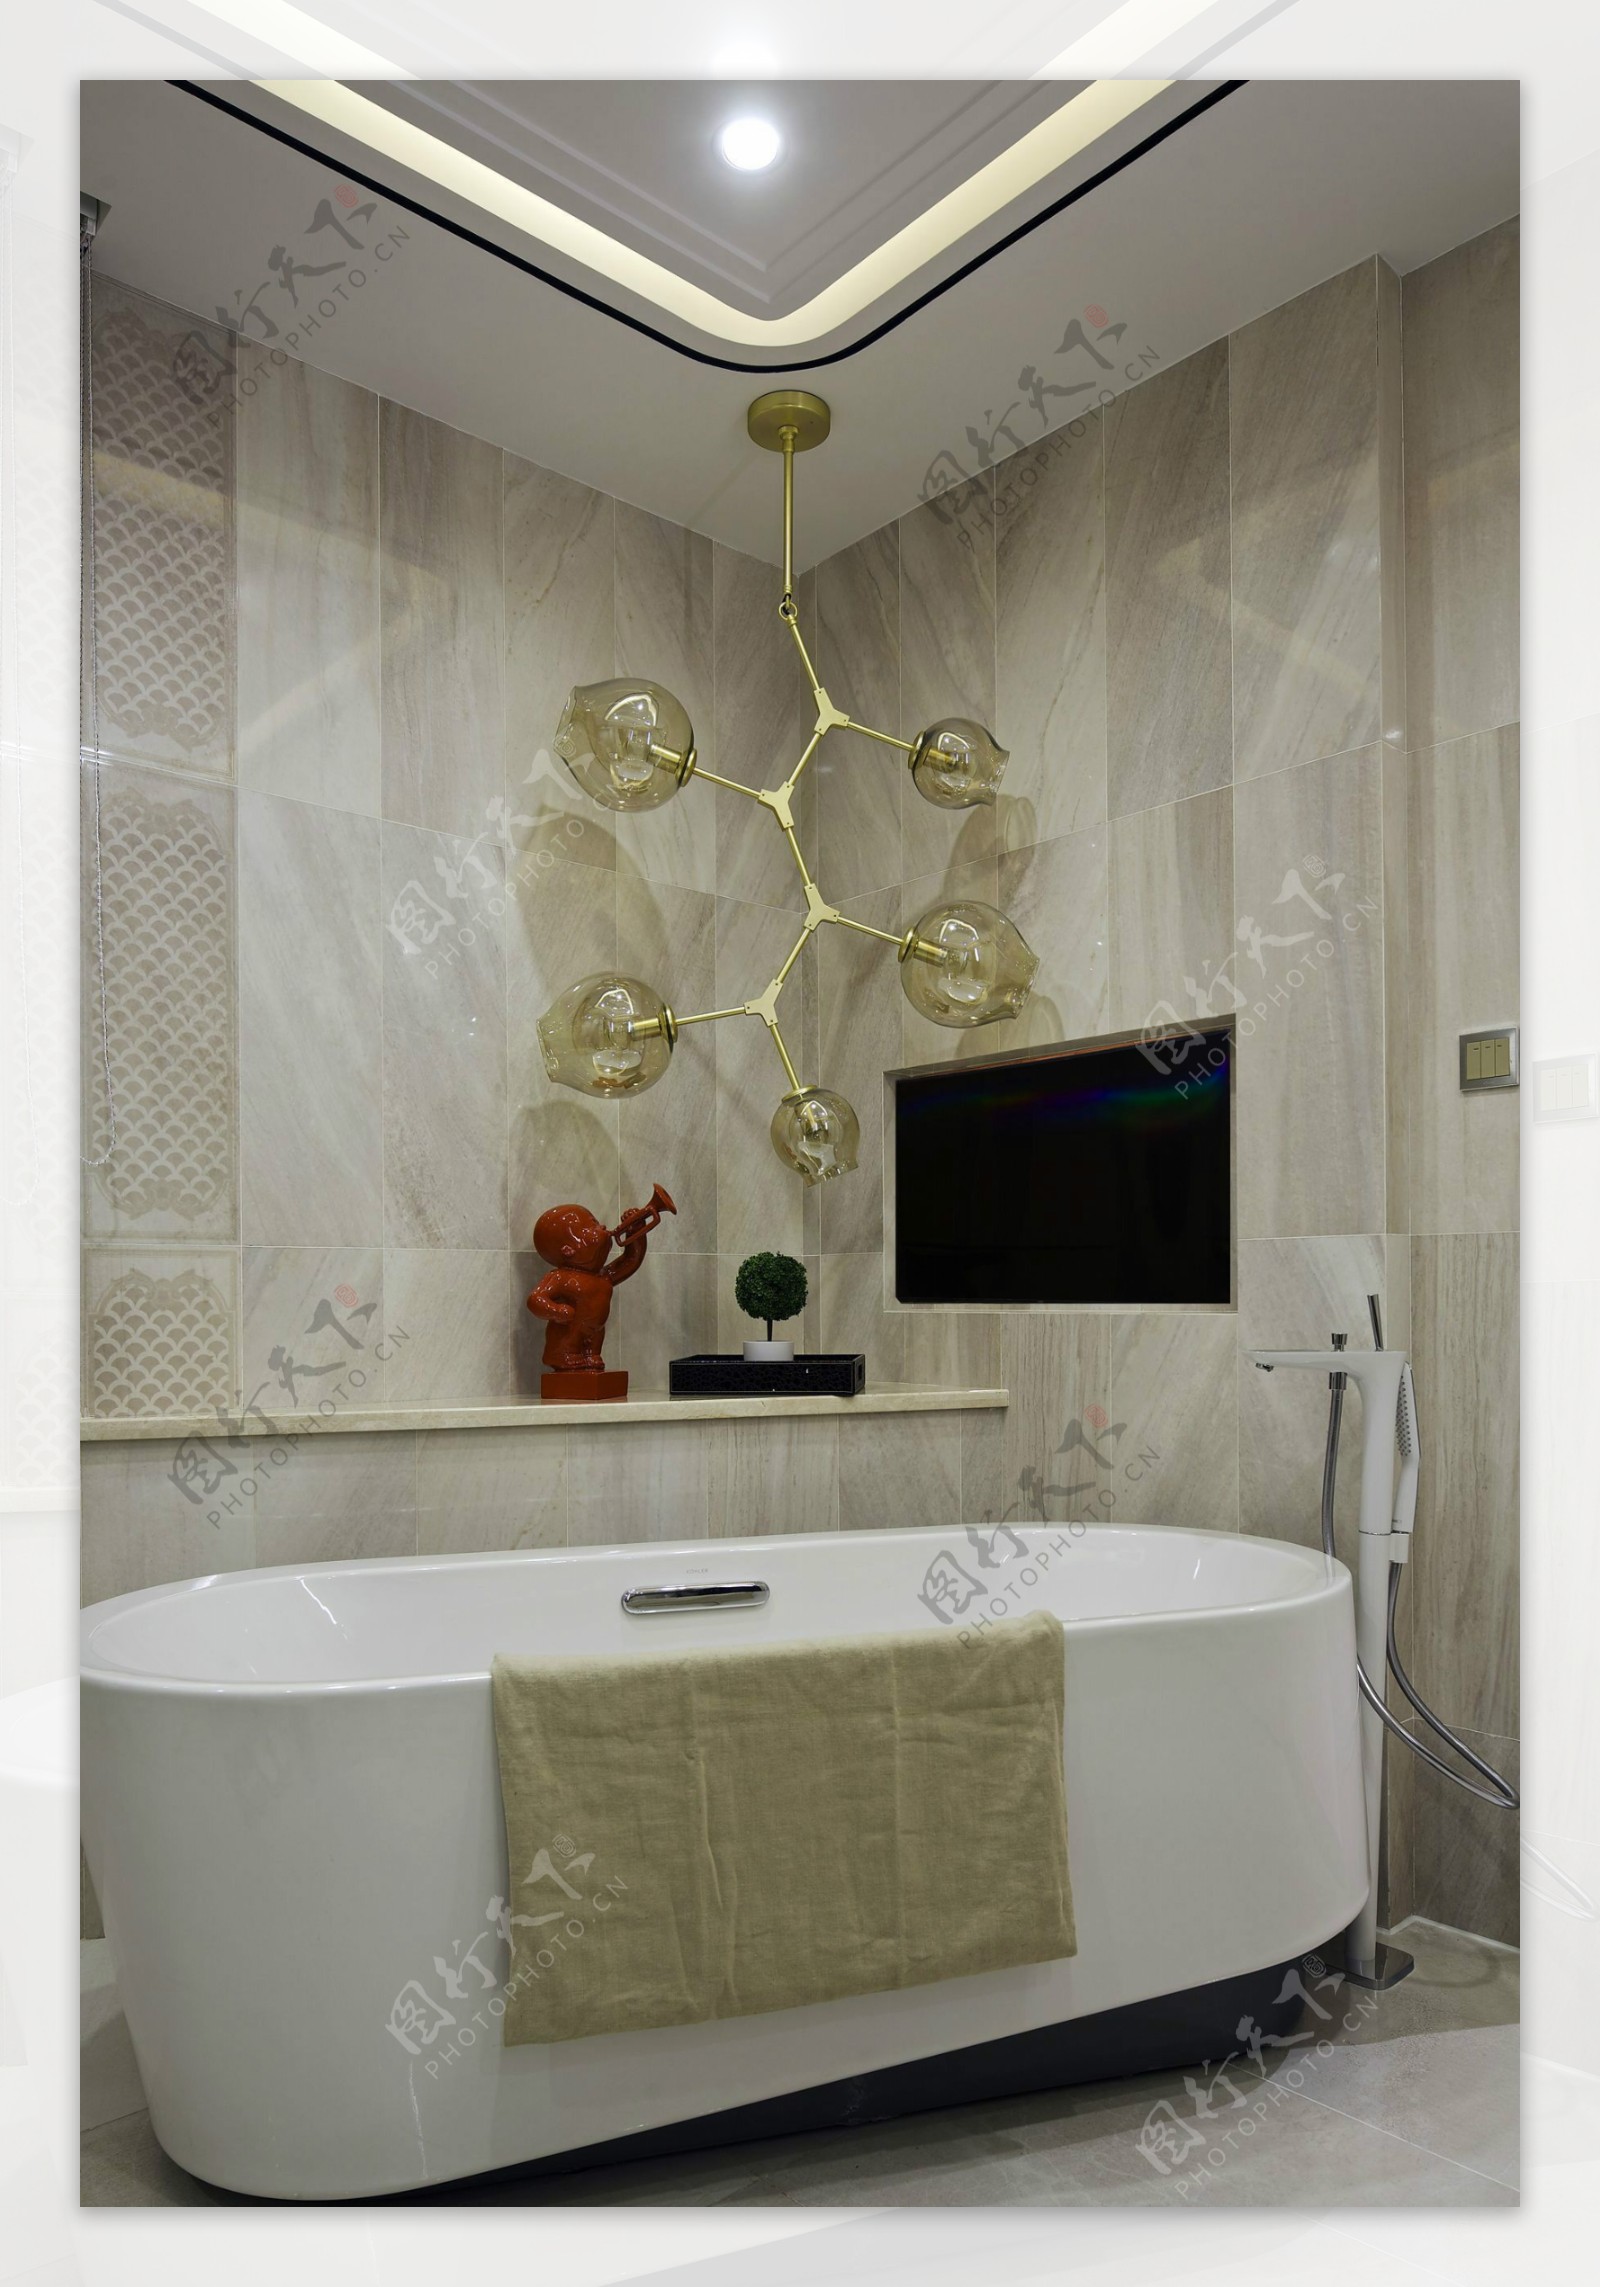 室内高端浴室装饰设计效果